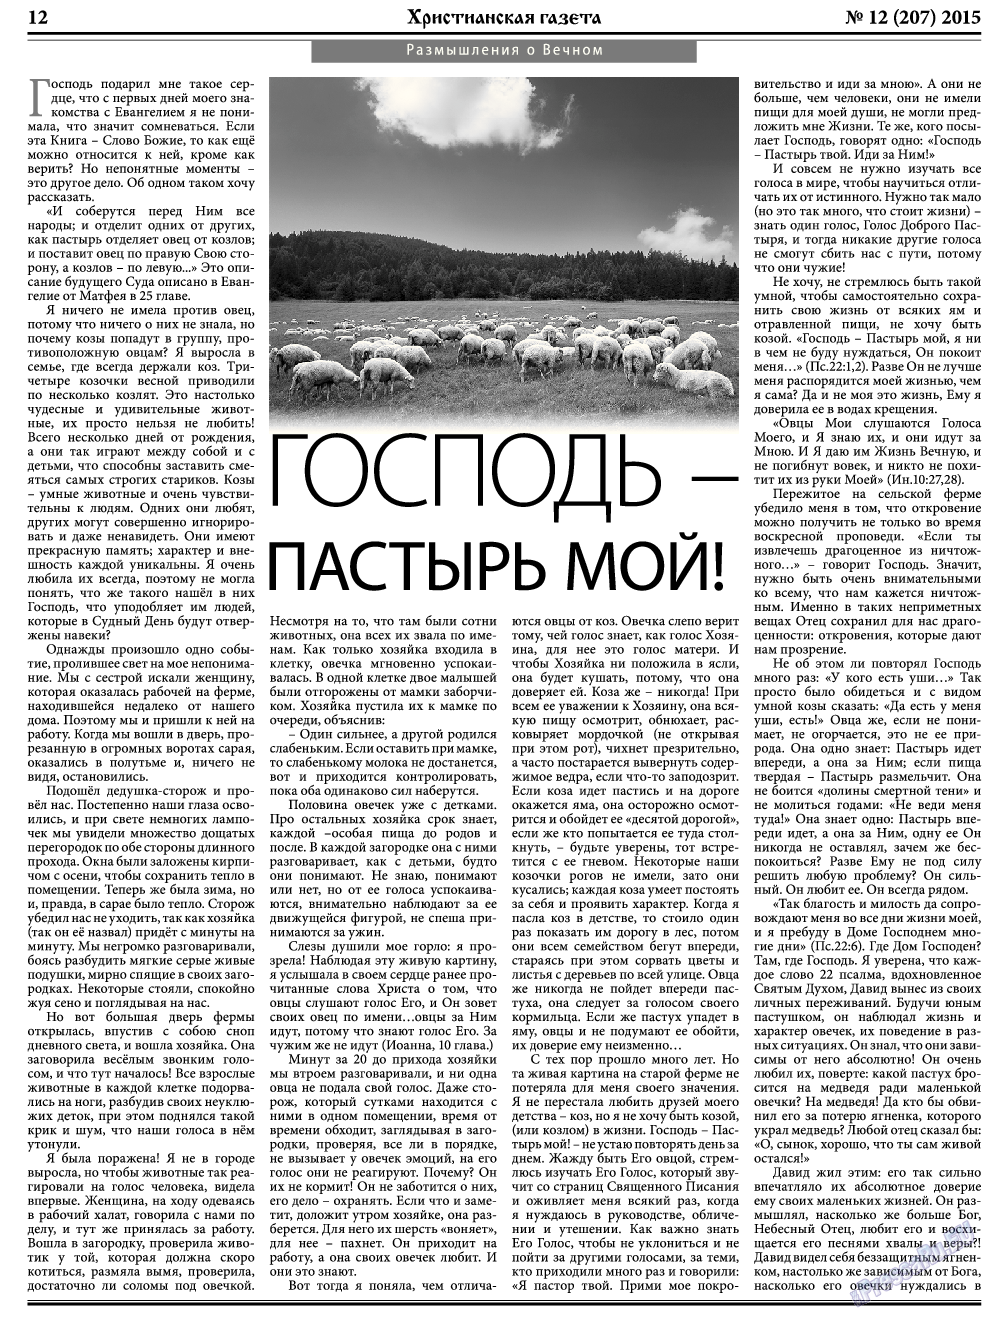 Христианская газета, газета. 2015 №12 стр.12